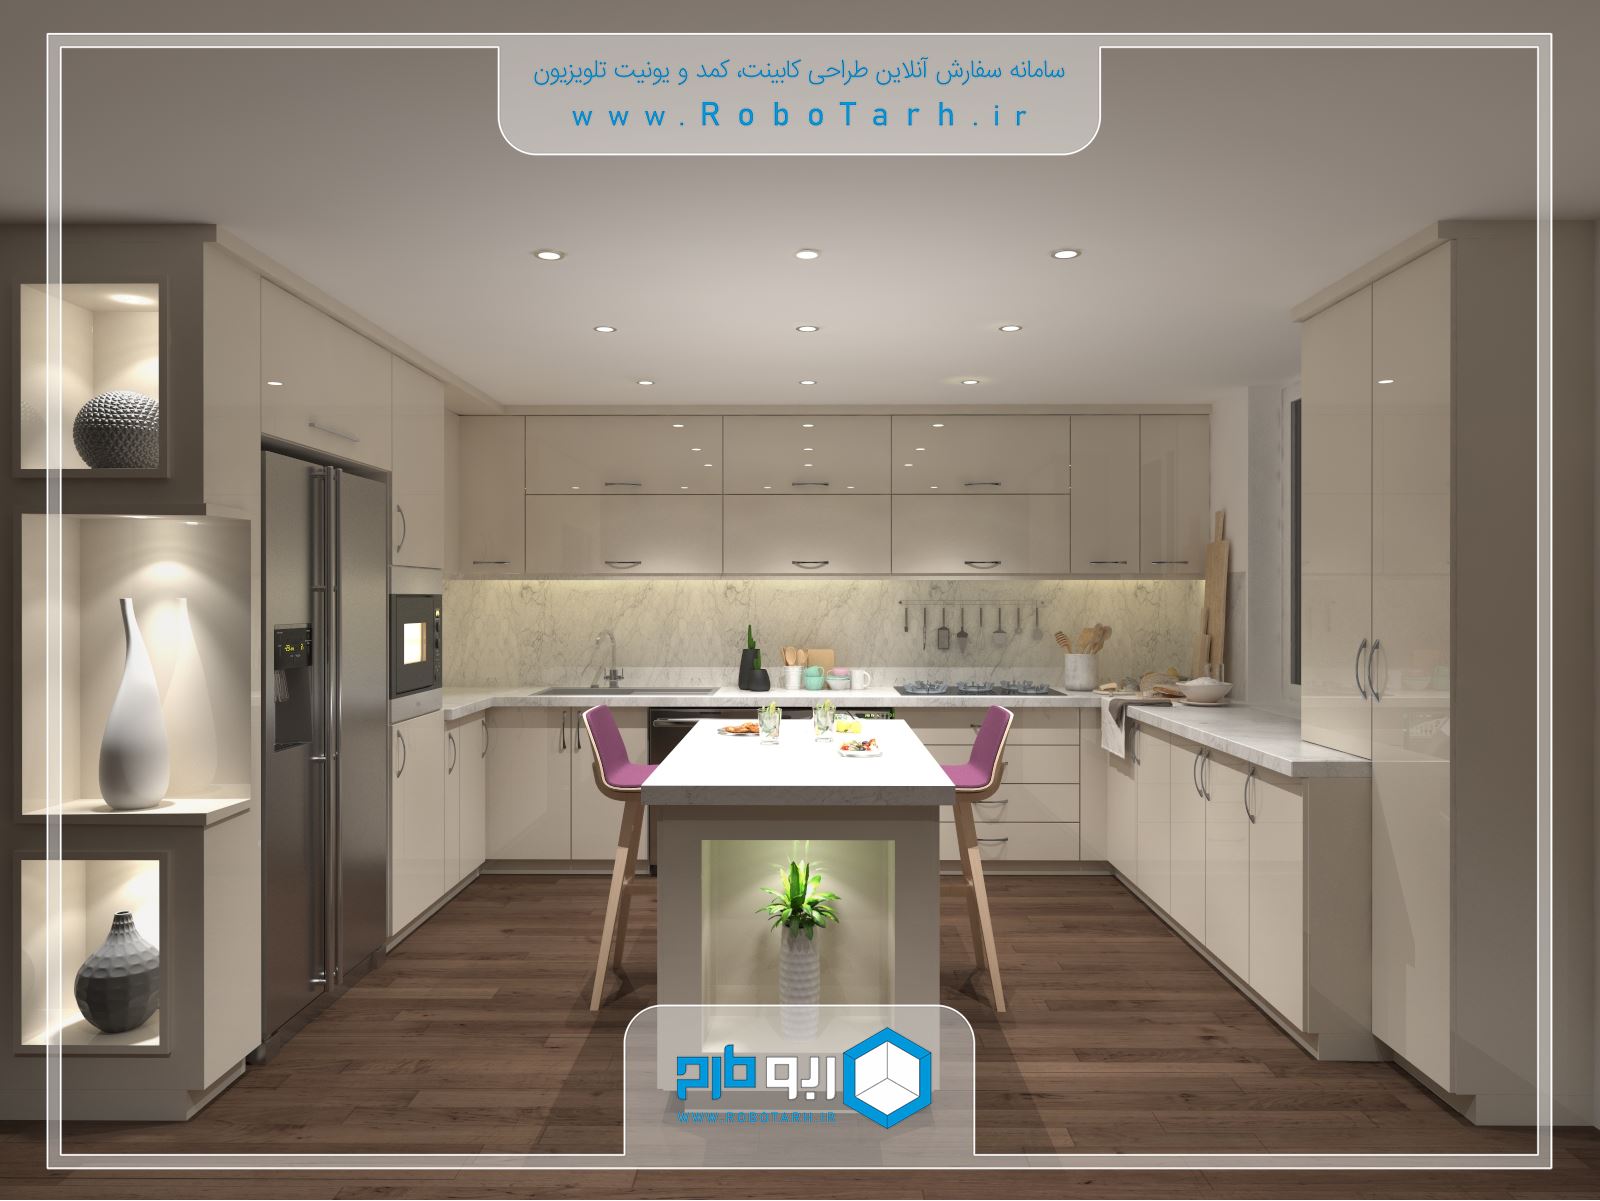 طراحی کابینت آشپزخانه ی کرم رنگ براق به سبک مدرن - ربوطرح